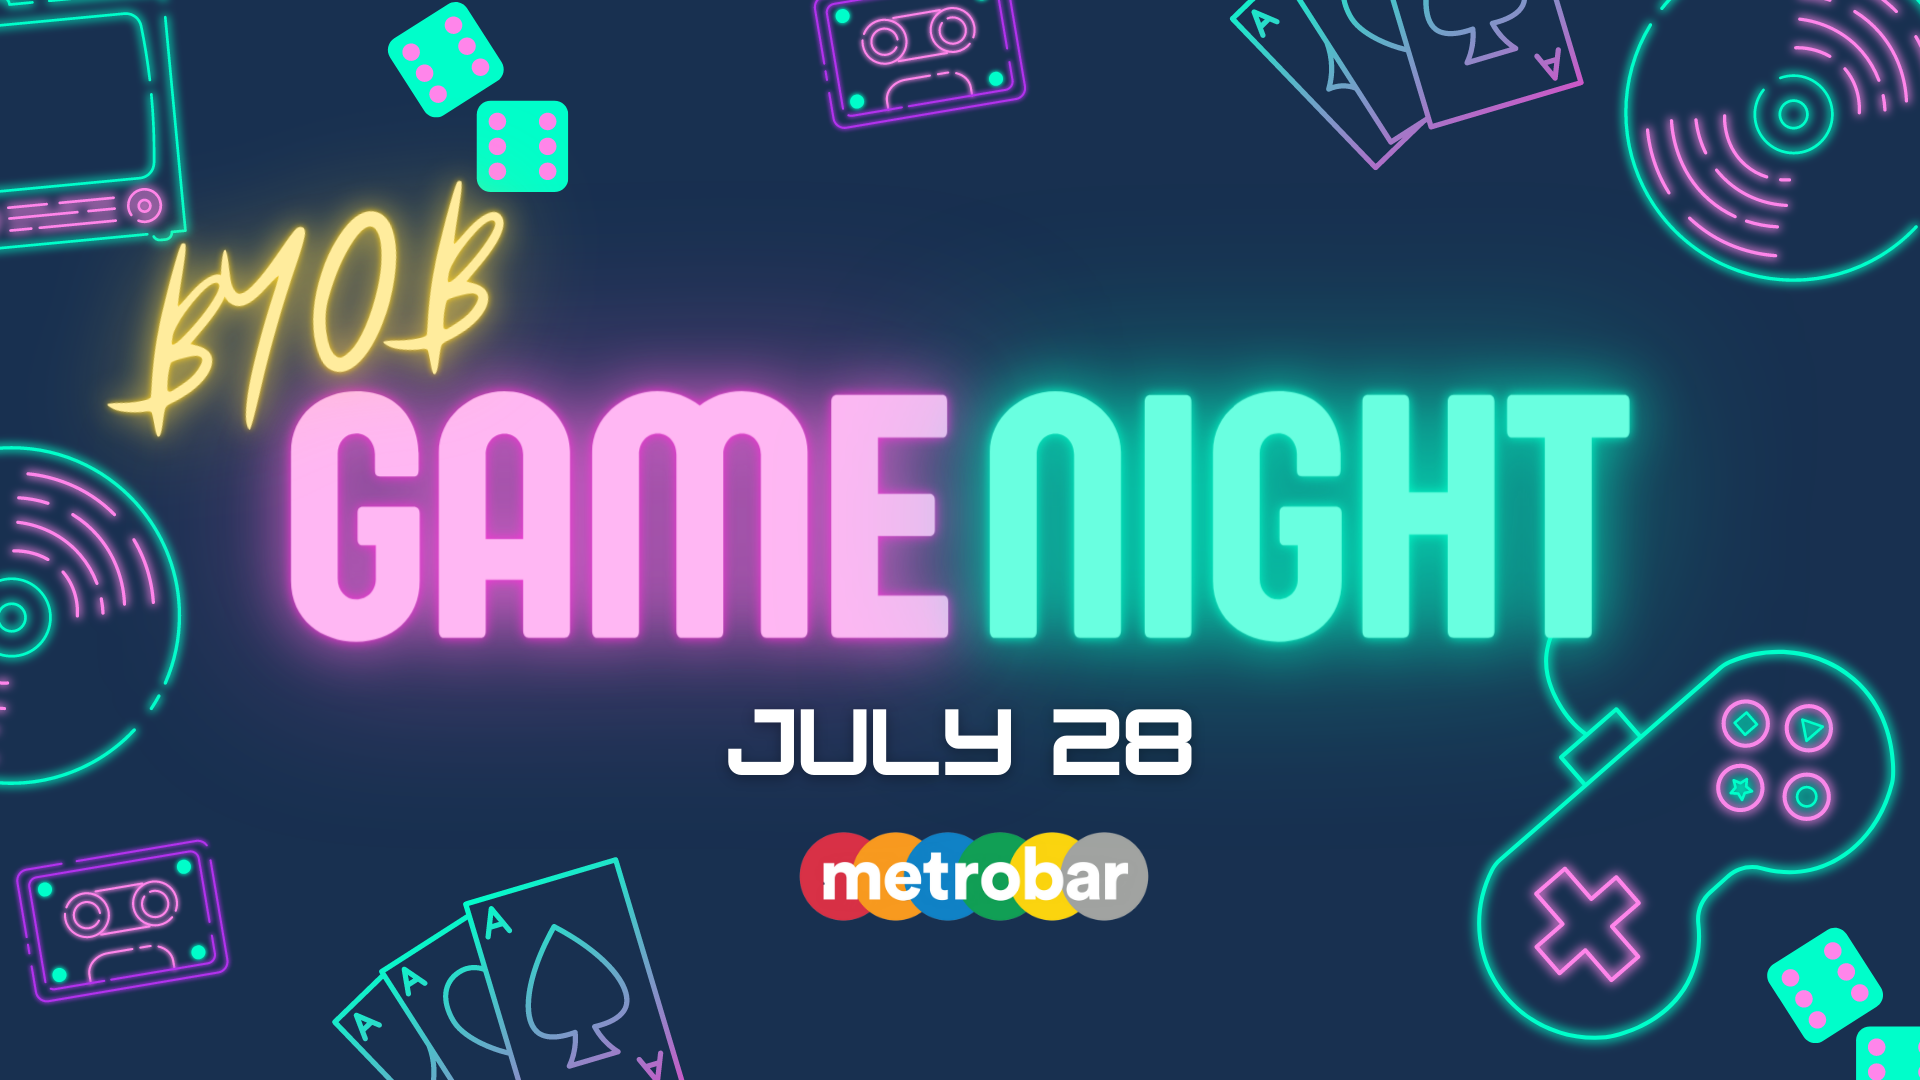 BYO Board Game Night at metrobar